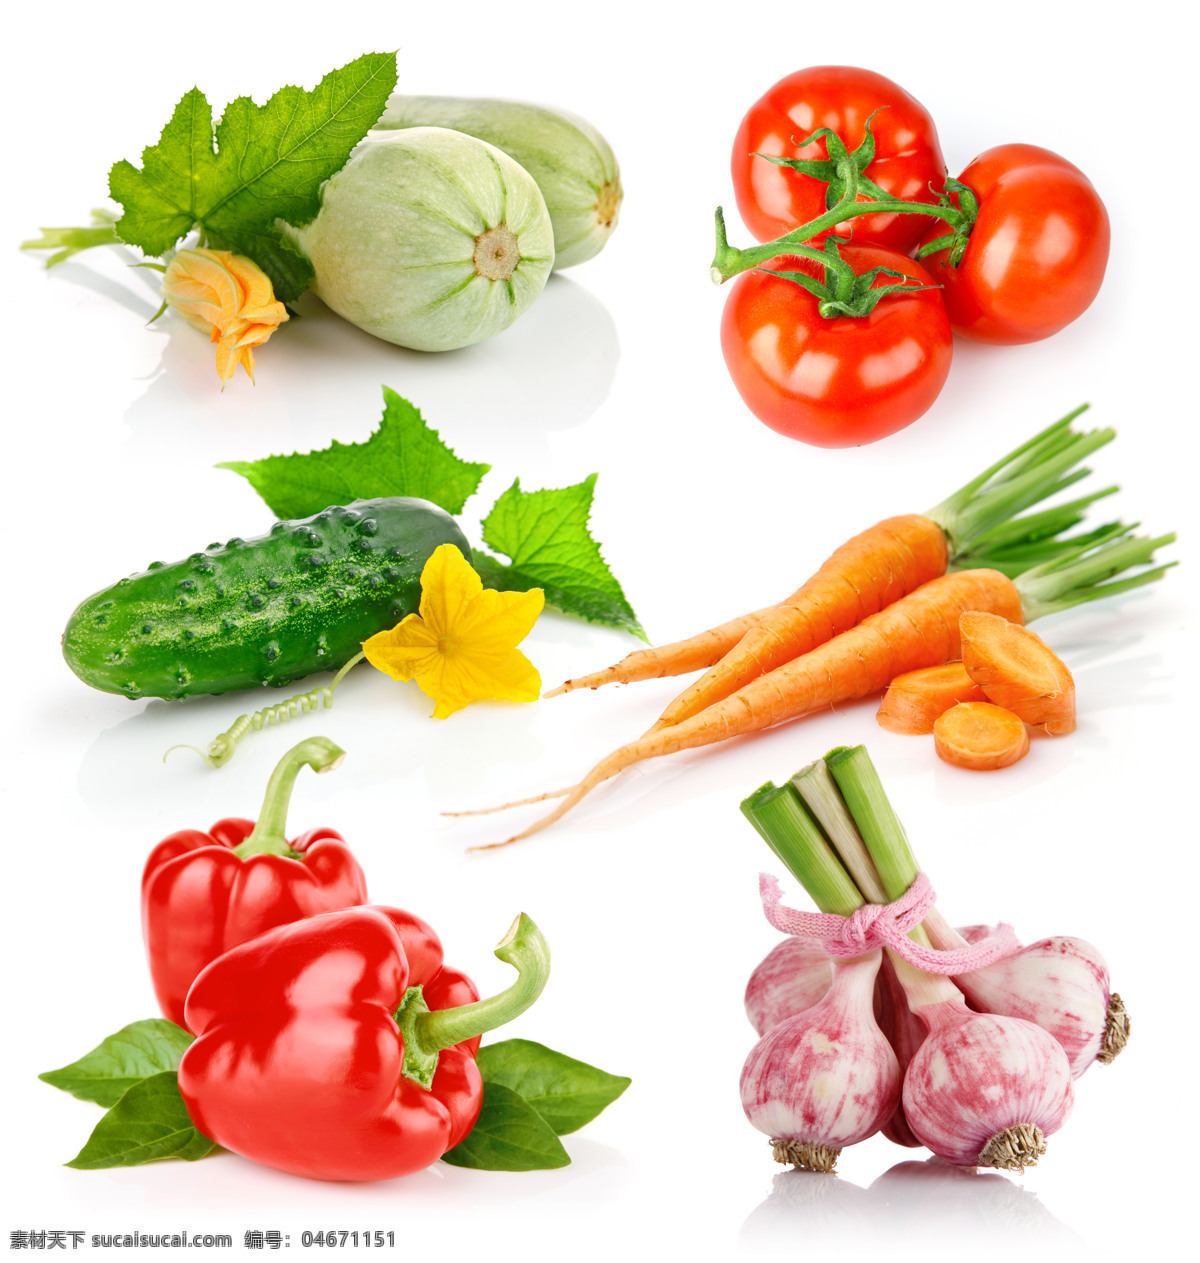 蔬菜 汇集 各种蔬菜 食物 植物 蔬菜汇聚 新鲜蔬菜 蔬菜图片 餐饮美食